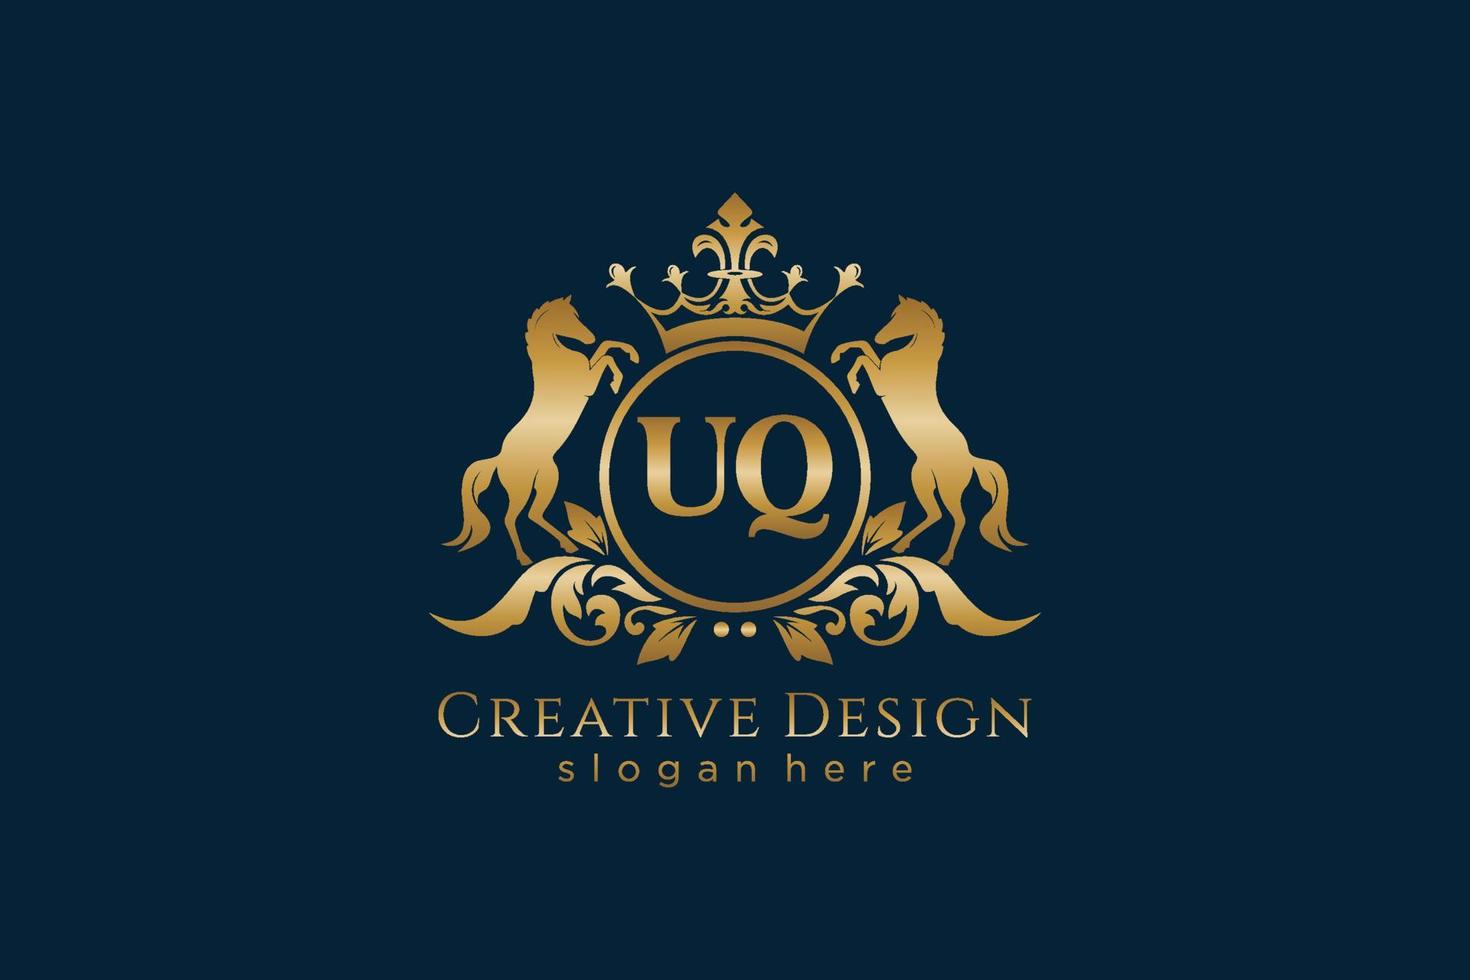 cresta dorada retro uq inicial con círculo y dos caballos, plantilla de insignia con pergaminos y corona real - perfecto para proyectos de marca de lujo vector